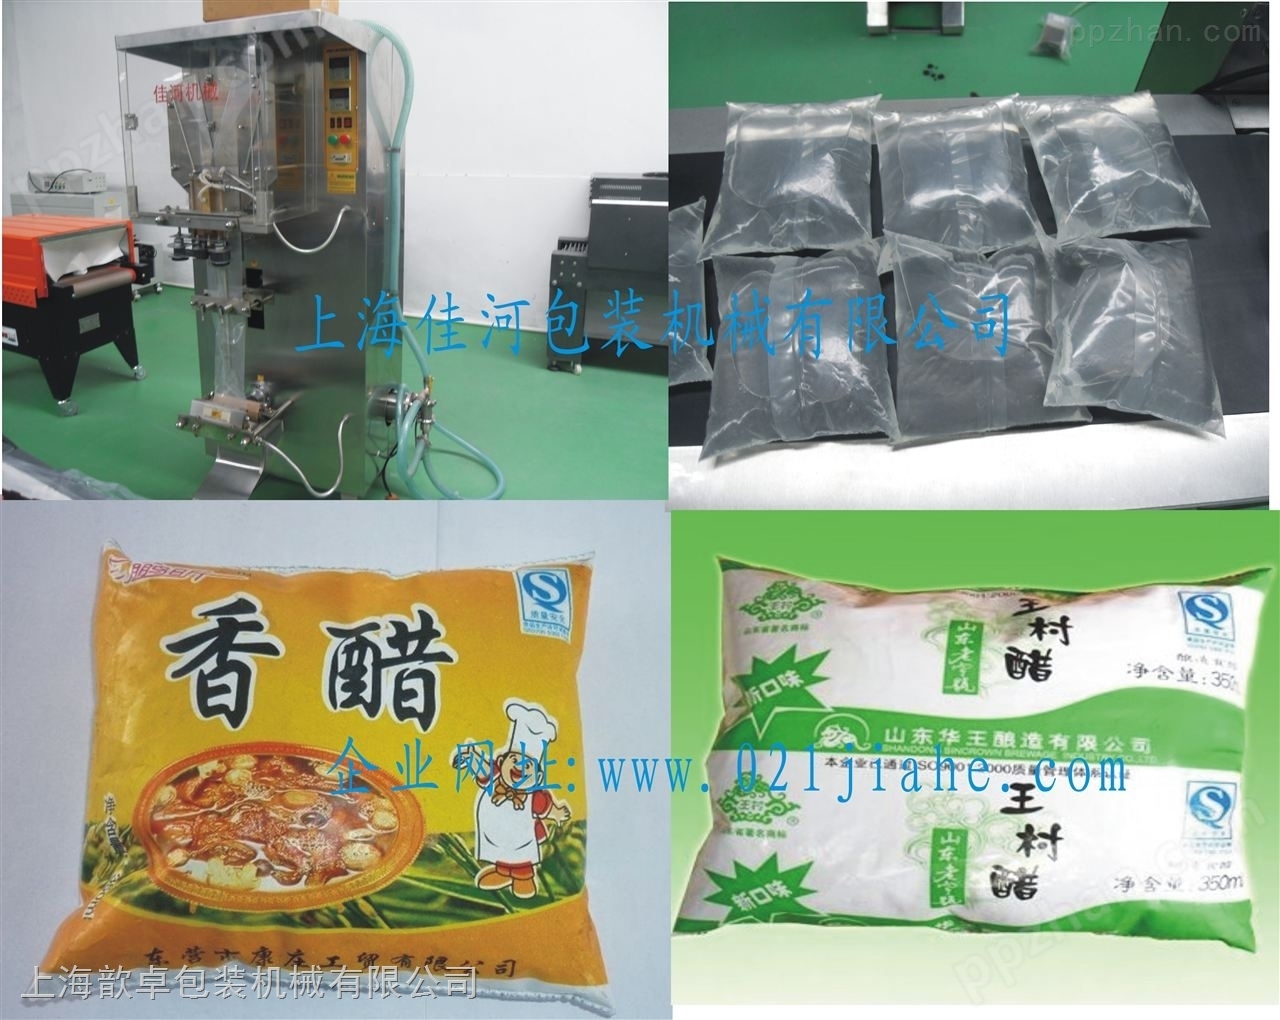 上海*液体自动包装机 袋装醋自动包装机